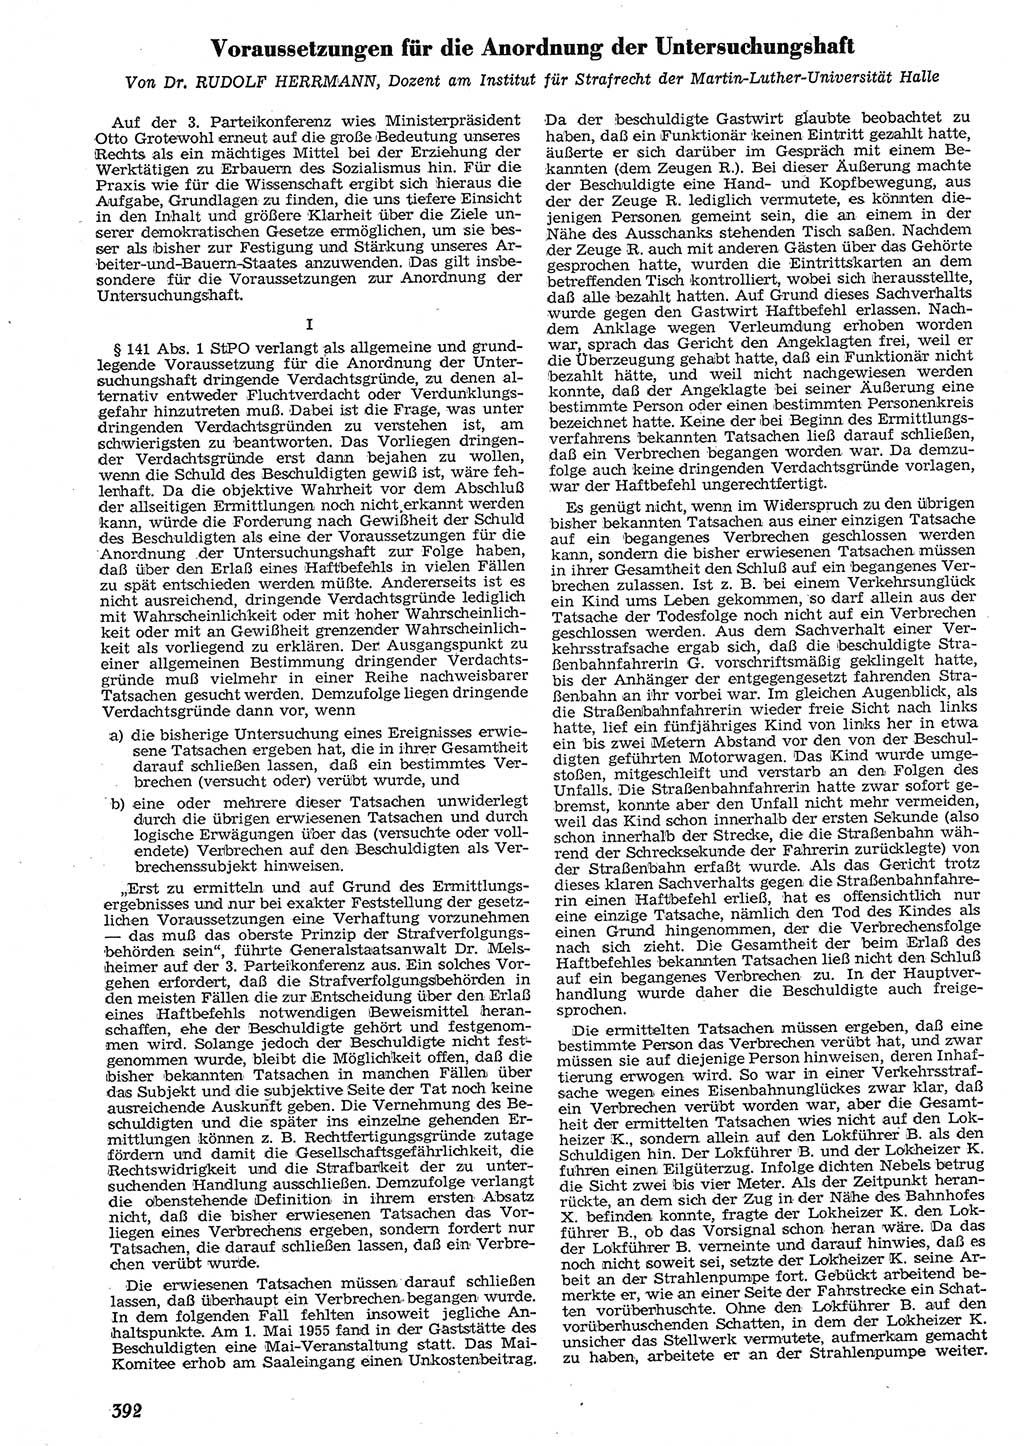 Neue Justiz (NJ), Zeitschrift für Recht und Rechtswissenschaft [Deutsche Demokratische Republik (DDR)], 10. Jahrgang 1956, Seite 392 (NJ DDR 1956, S. 392)